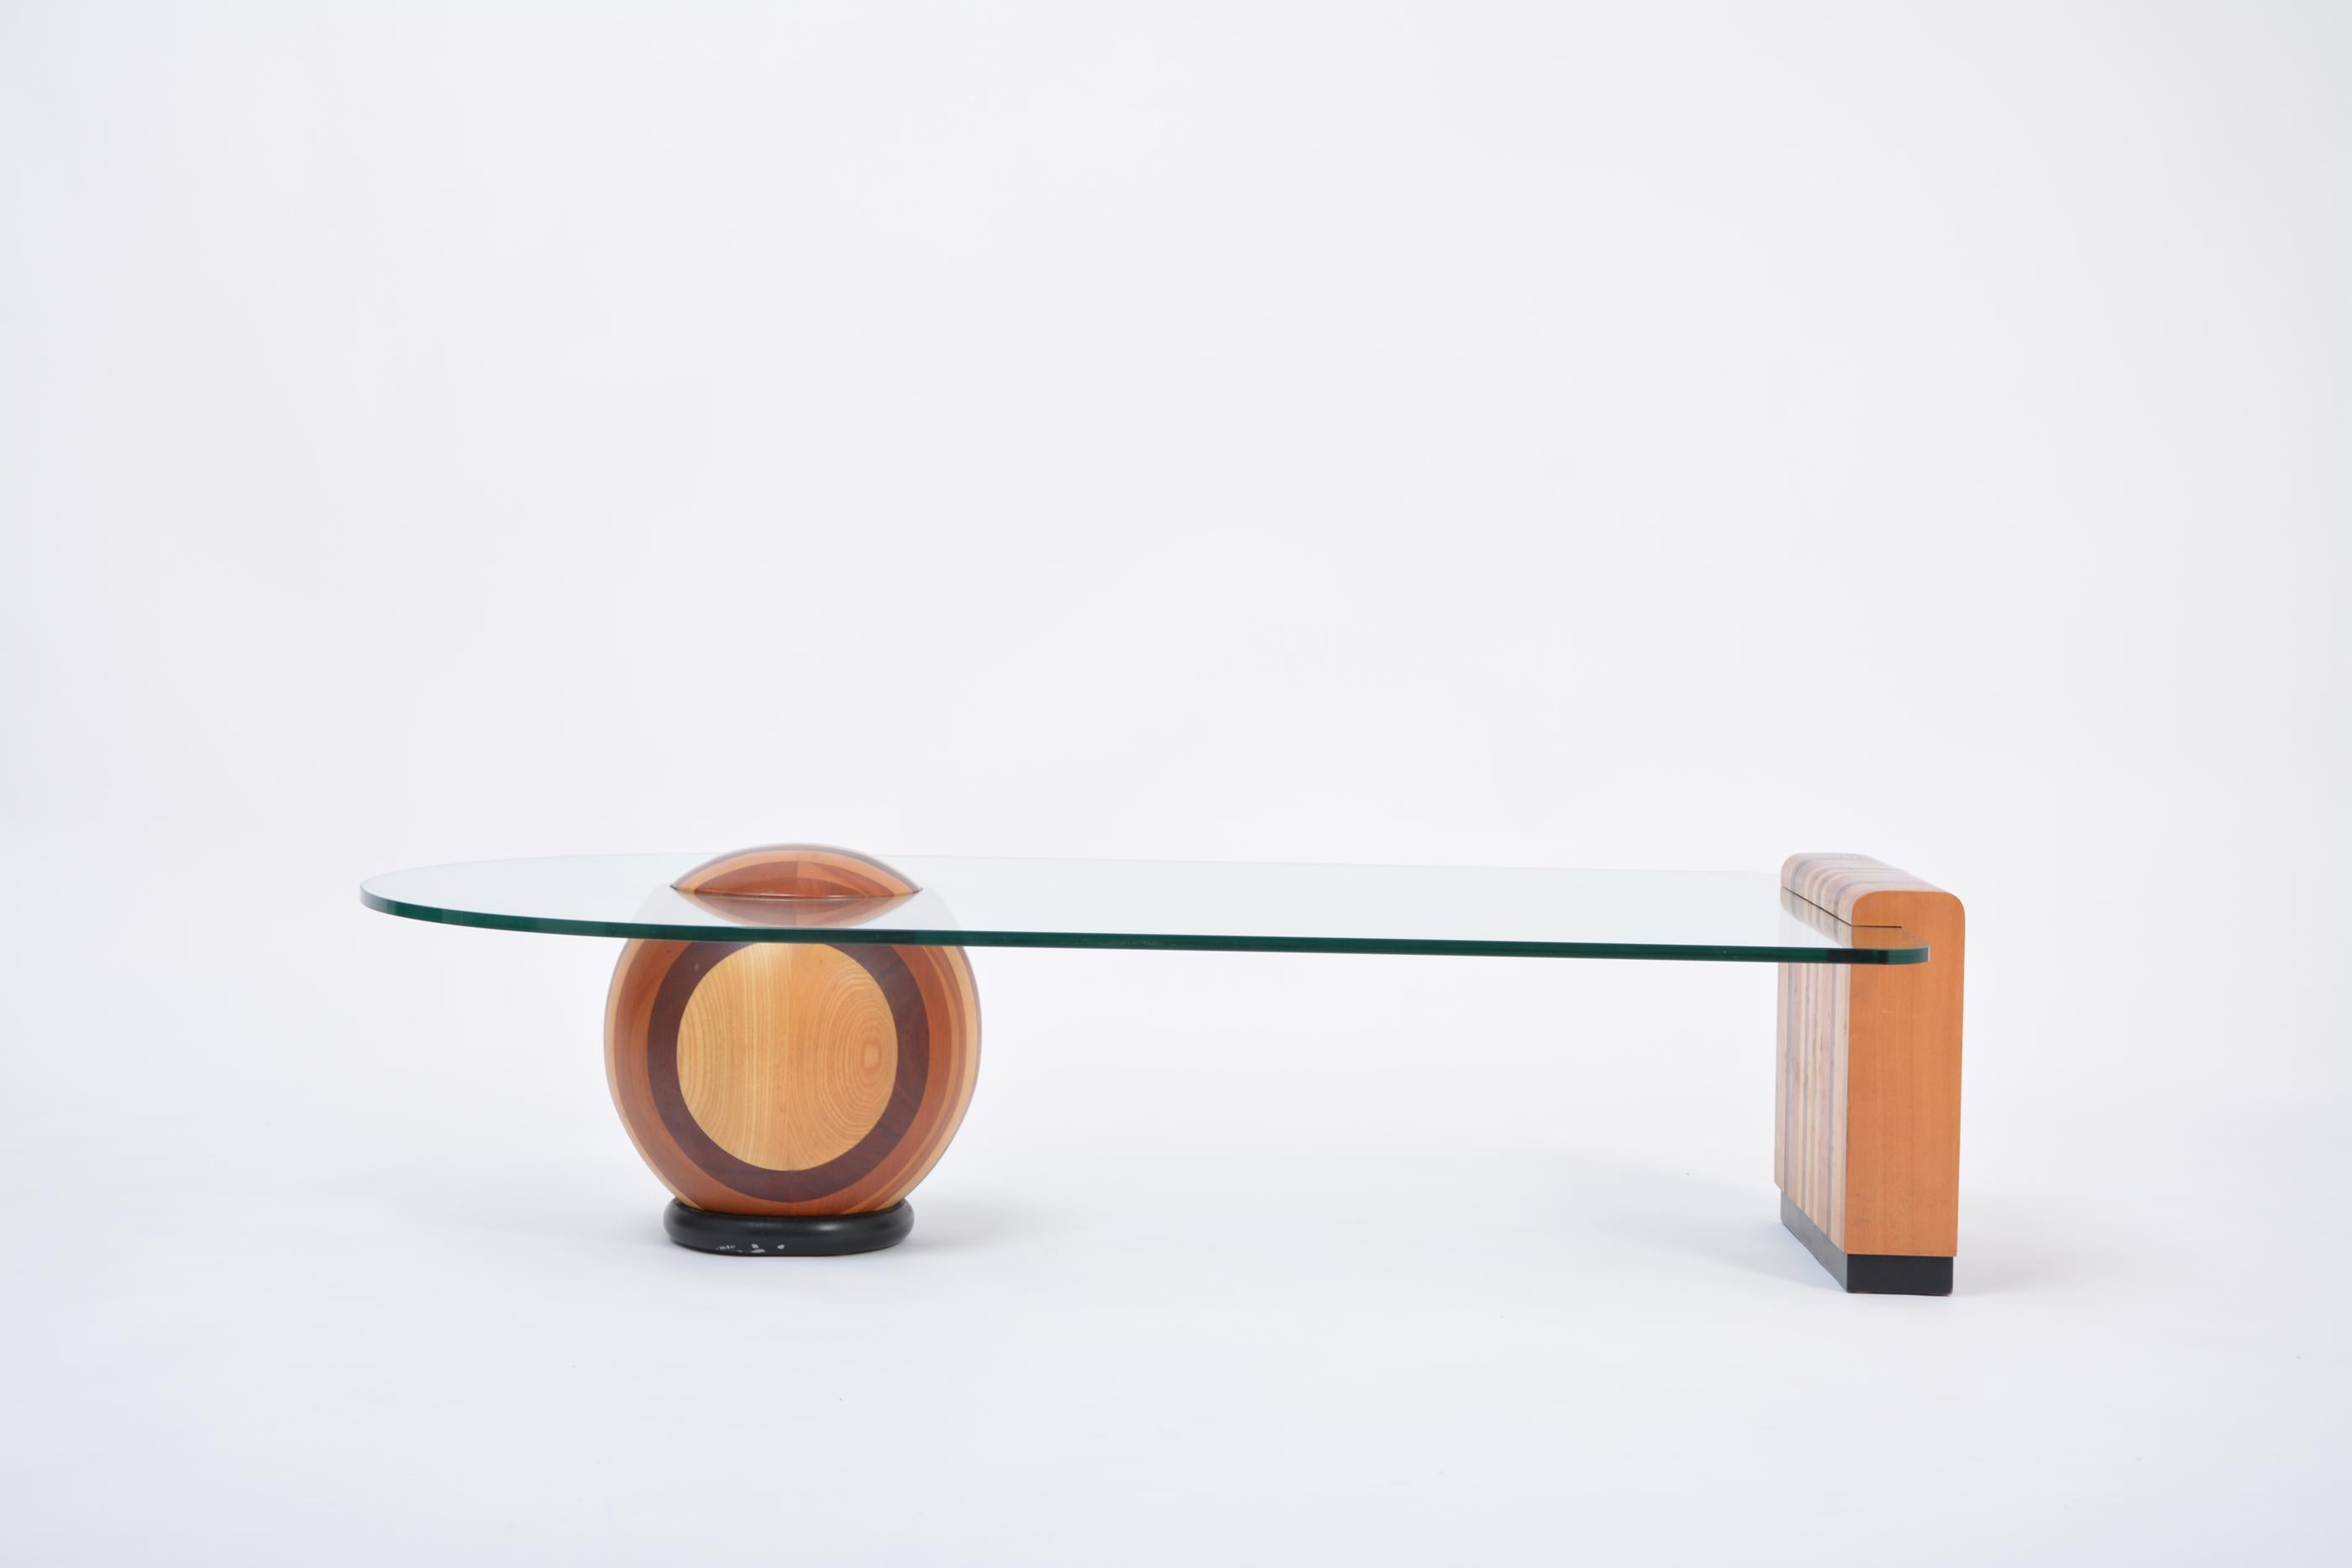 Seltener Couchtisch von Massimo und Lella Vignelli, hergestellt von Casigliani in den 1970er Jahren in Italien. Der Tisch besteht aus drei Teilen: einer Schale und einem Sockel aus verschiedenen Holzscheiben verschiedener Arten und der Glasplatte.